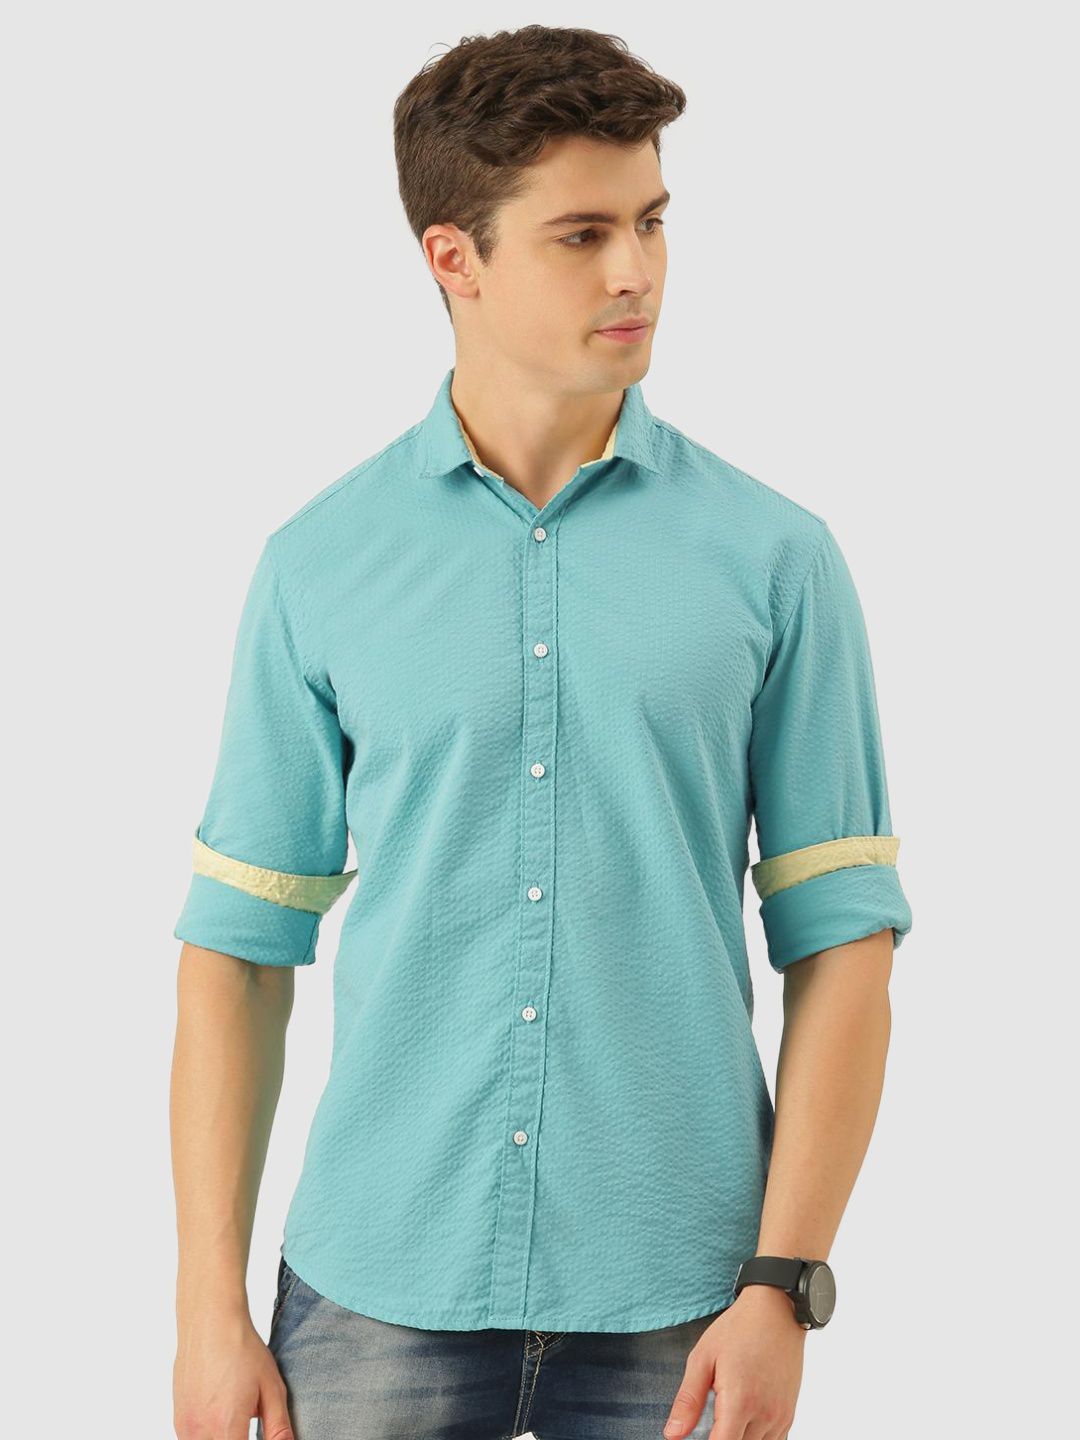     			Bene Kleed - Blue Cotton Blend Regular Fit Men's Casual Shirt ( Pack of 1 )